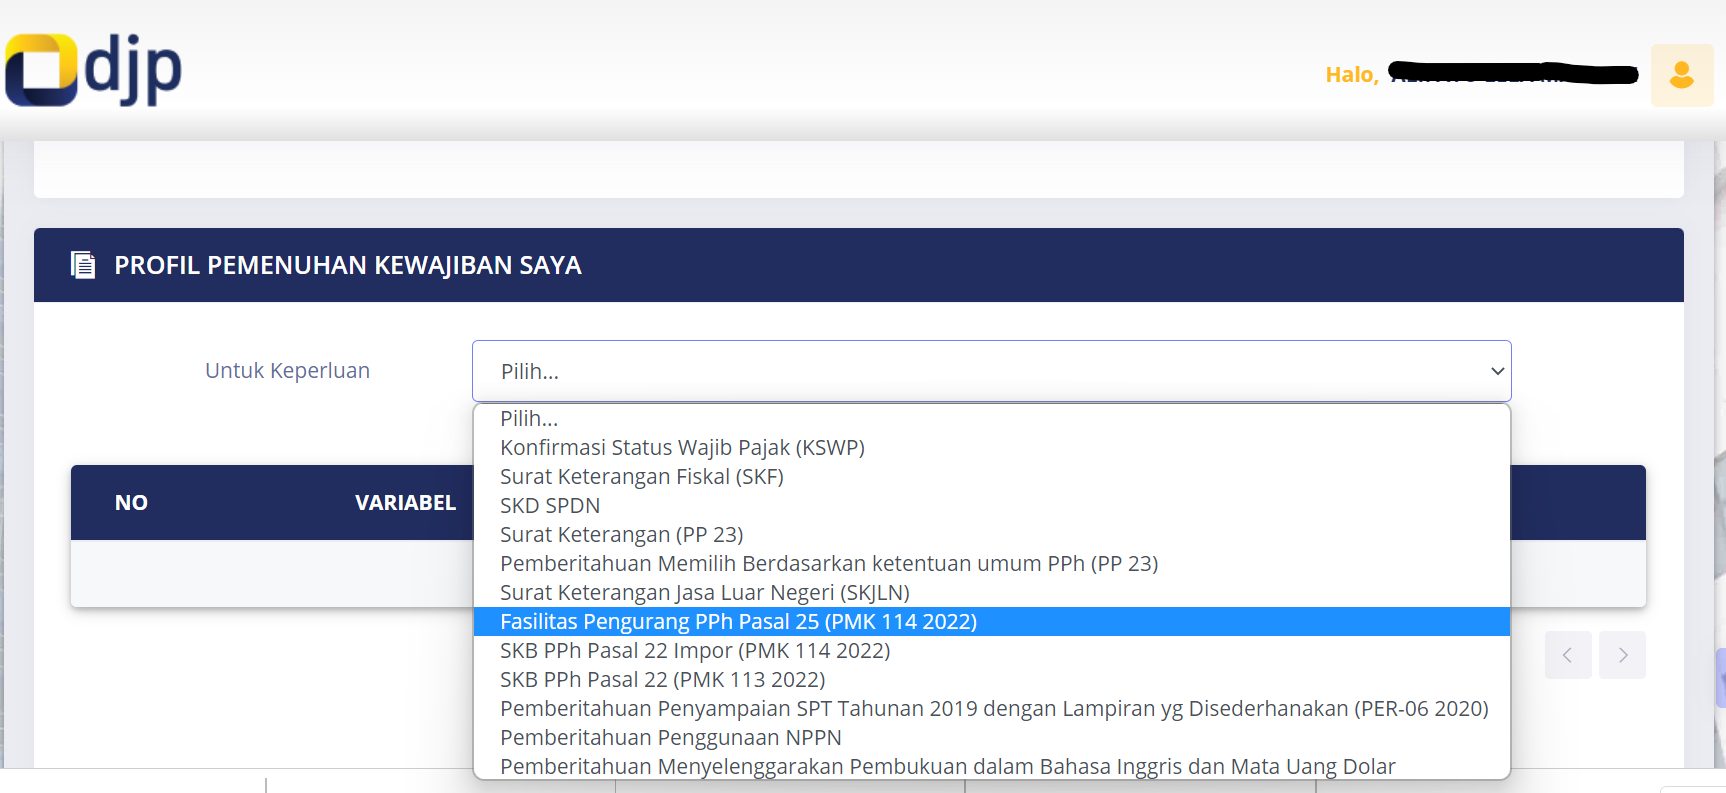 Permohonan Insentif Pajak PMK-114/2022 Telah Tersedia di DJP Online